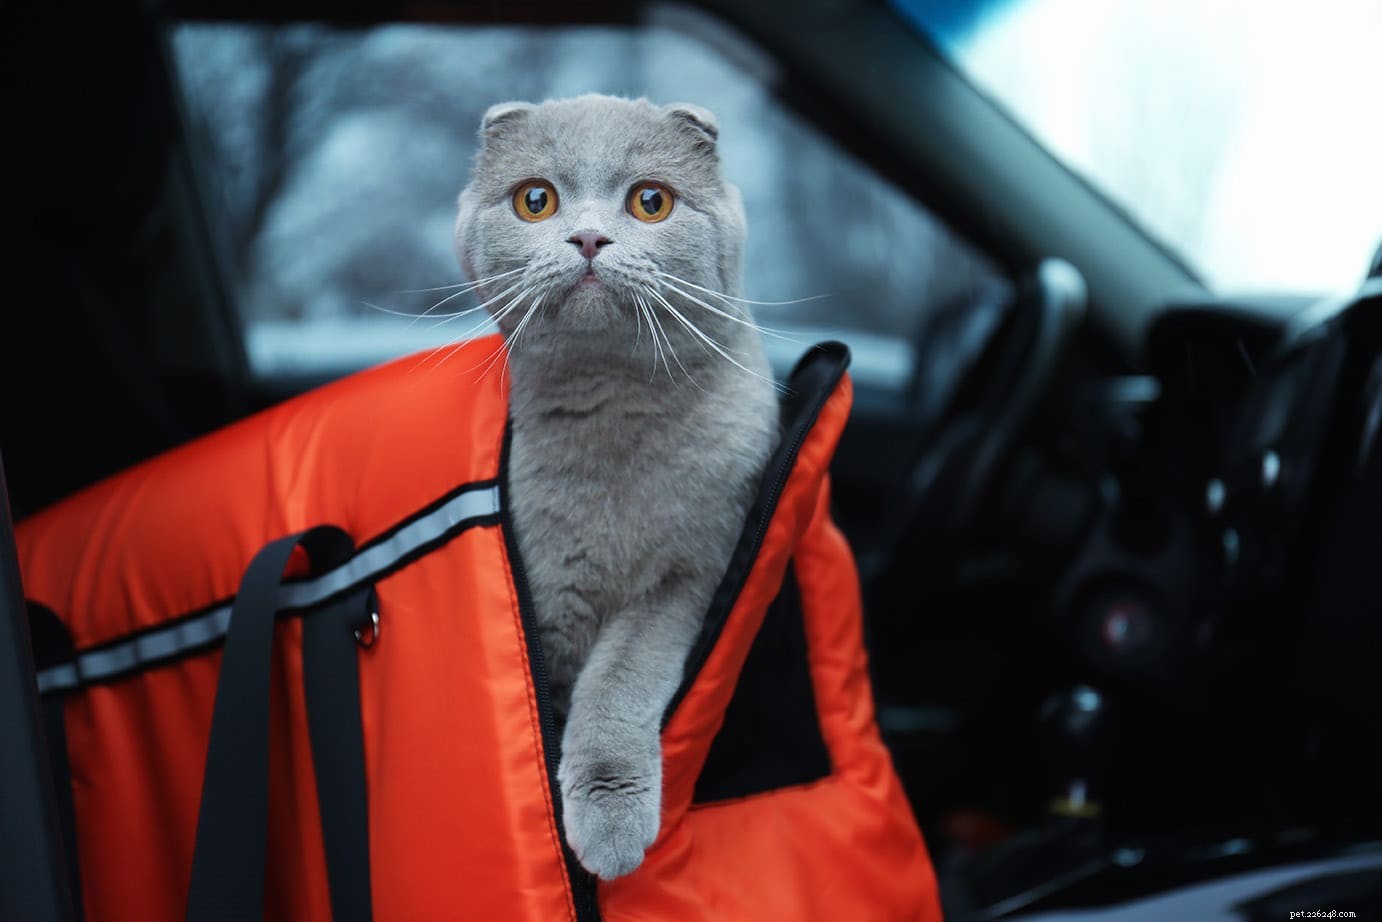 차 안에 있는 고양이를 진정시키는 방법(8가지 입증된 방법)